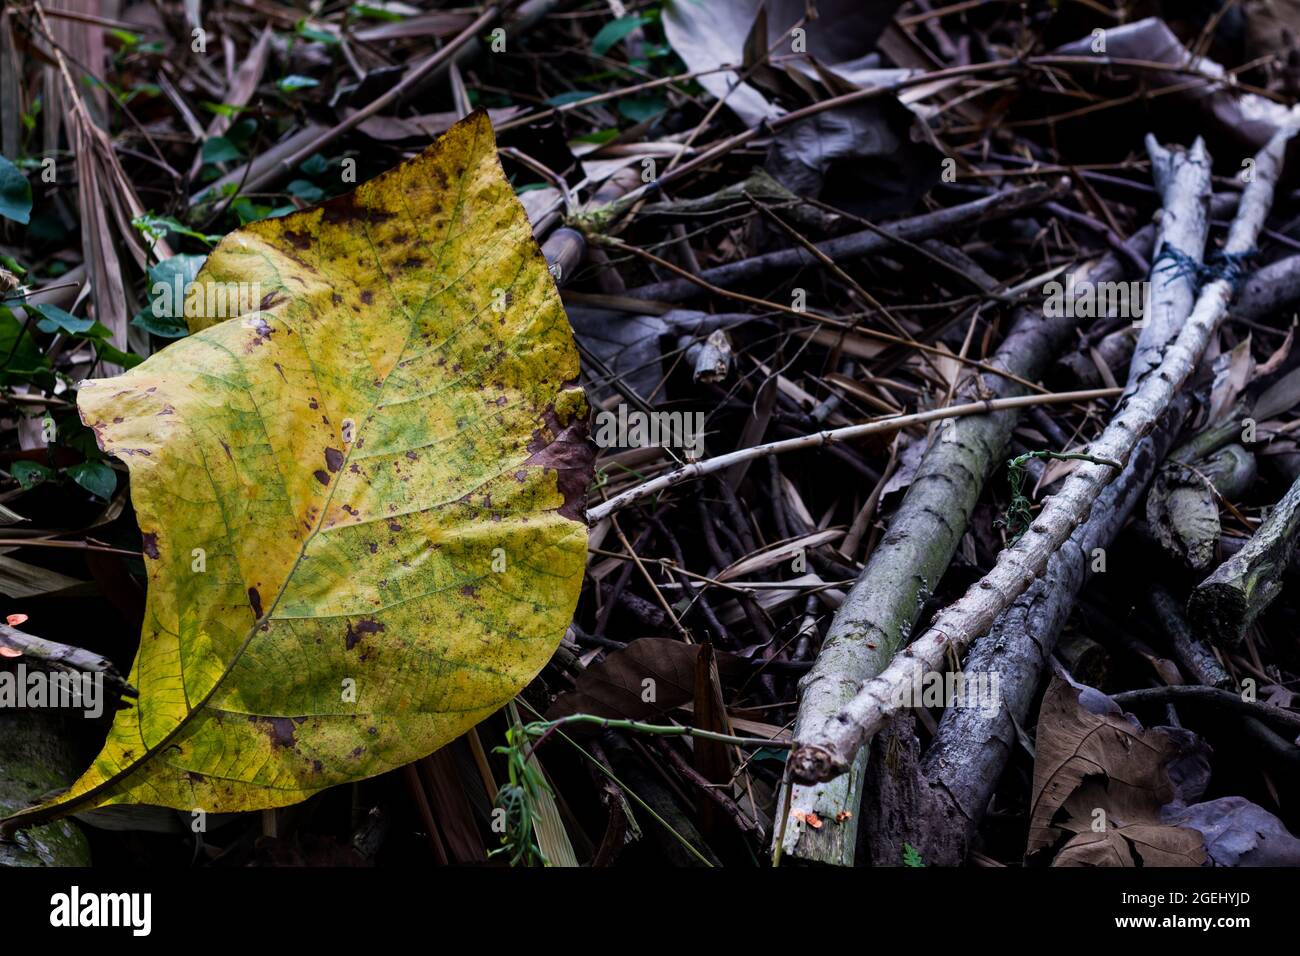 Le foglie dell'albero di teak che sono caduti dai rami sono giallastre nel colore, la consistenza è larga e ruvida Foto Stock